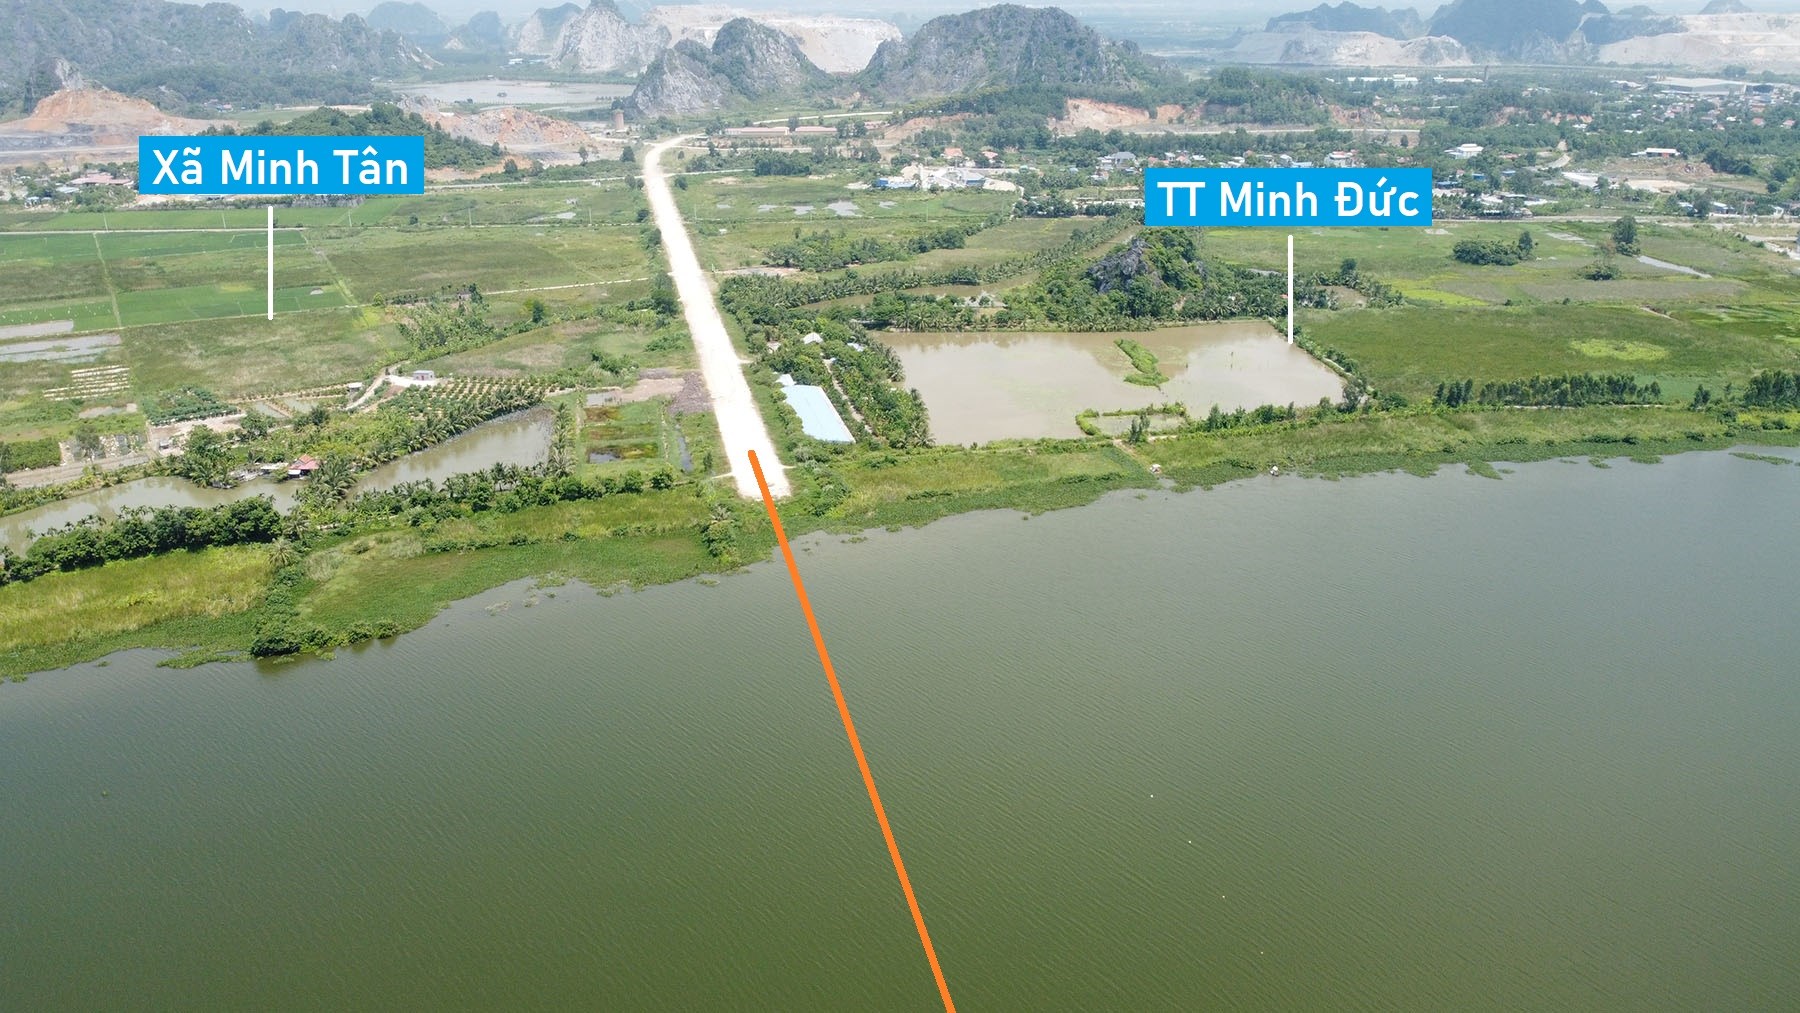 Toàn cảnh vị trí quy hoạch cầu vượt sông Giá nối TT Minh Đức - xã Ngũ Lão, Thủy Nguyên, Hải Phòng